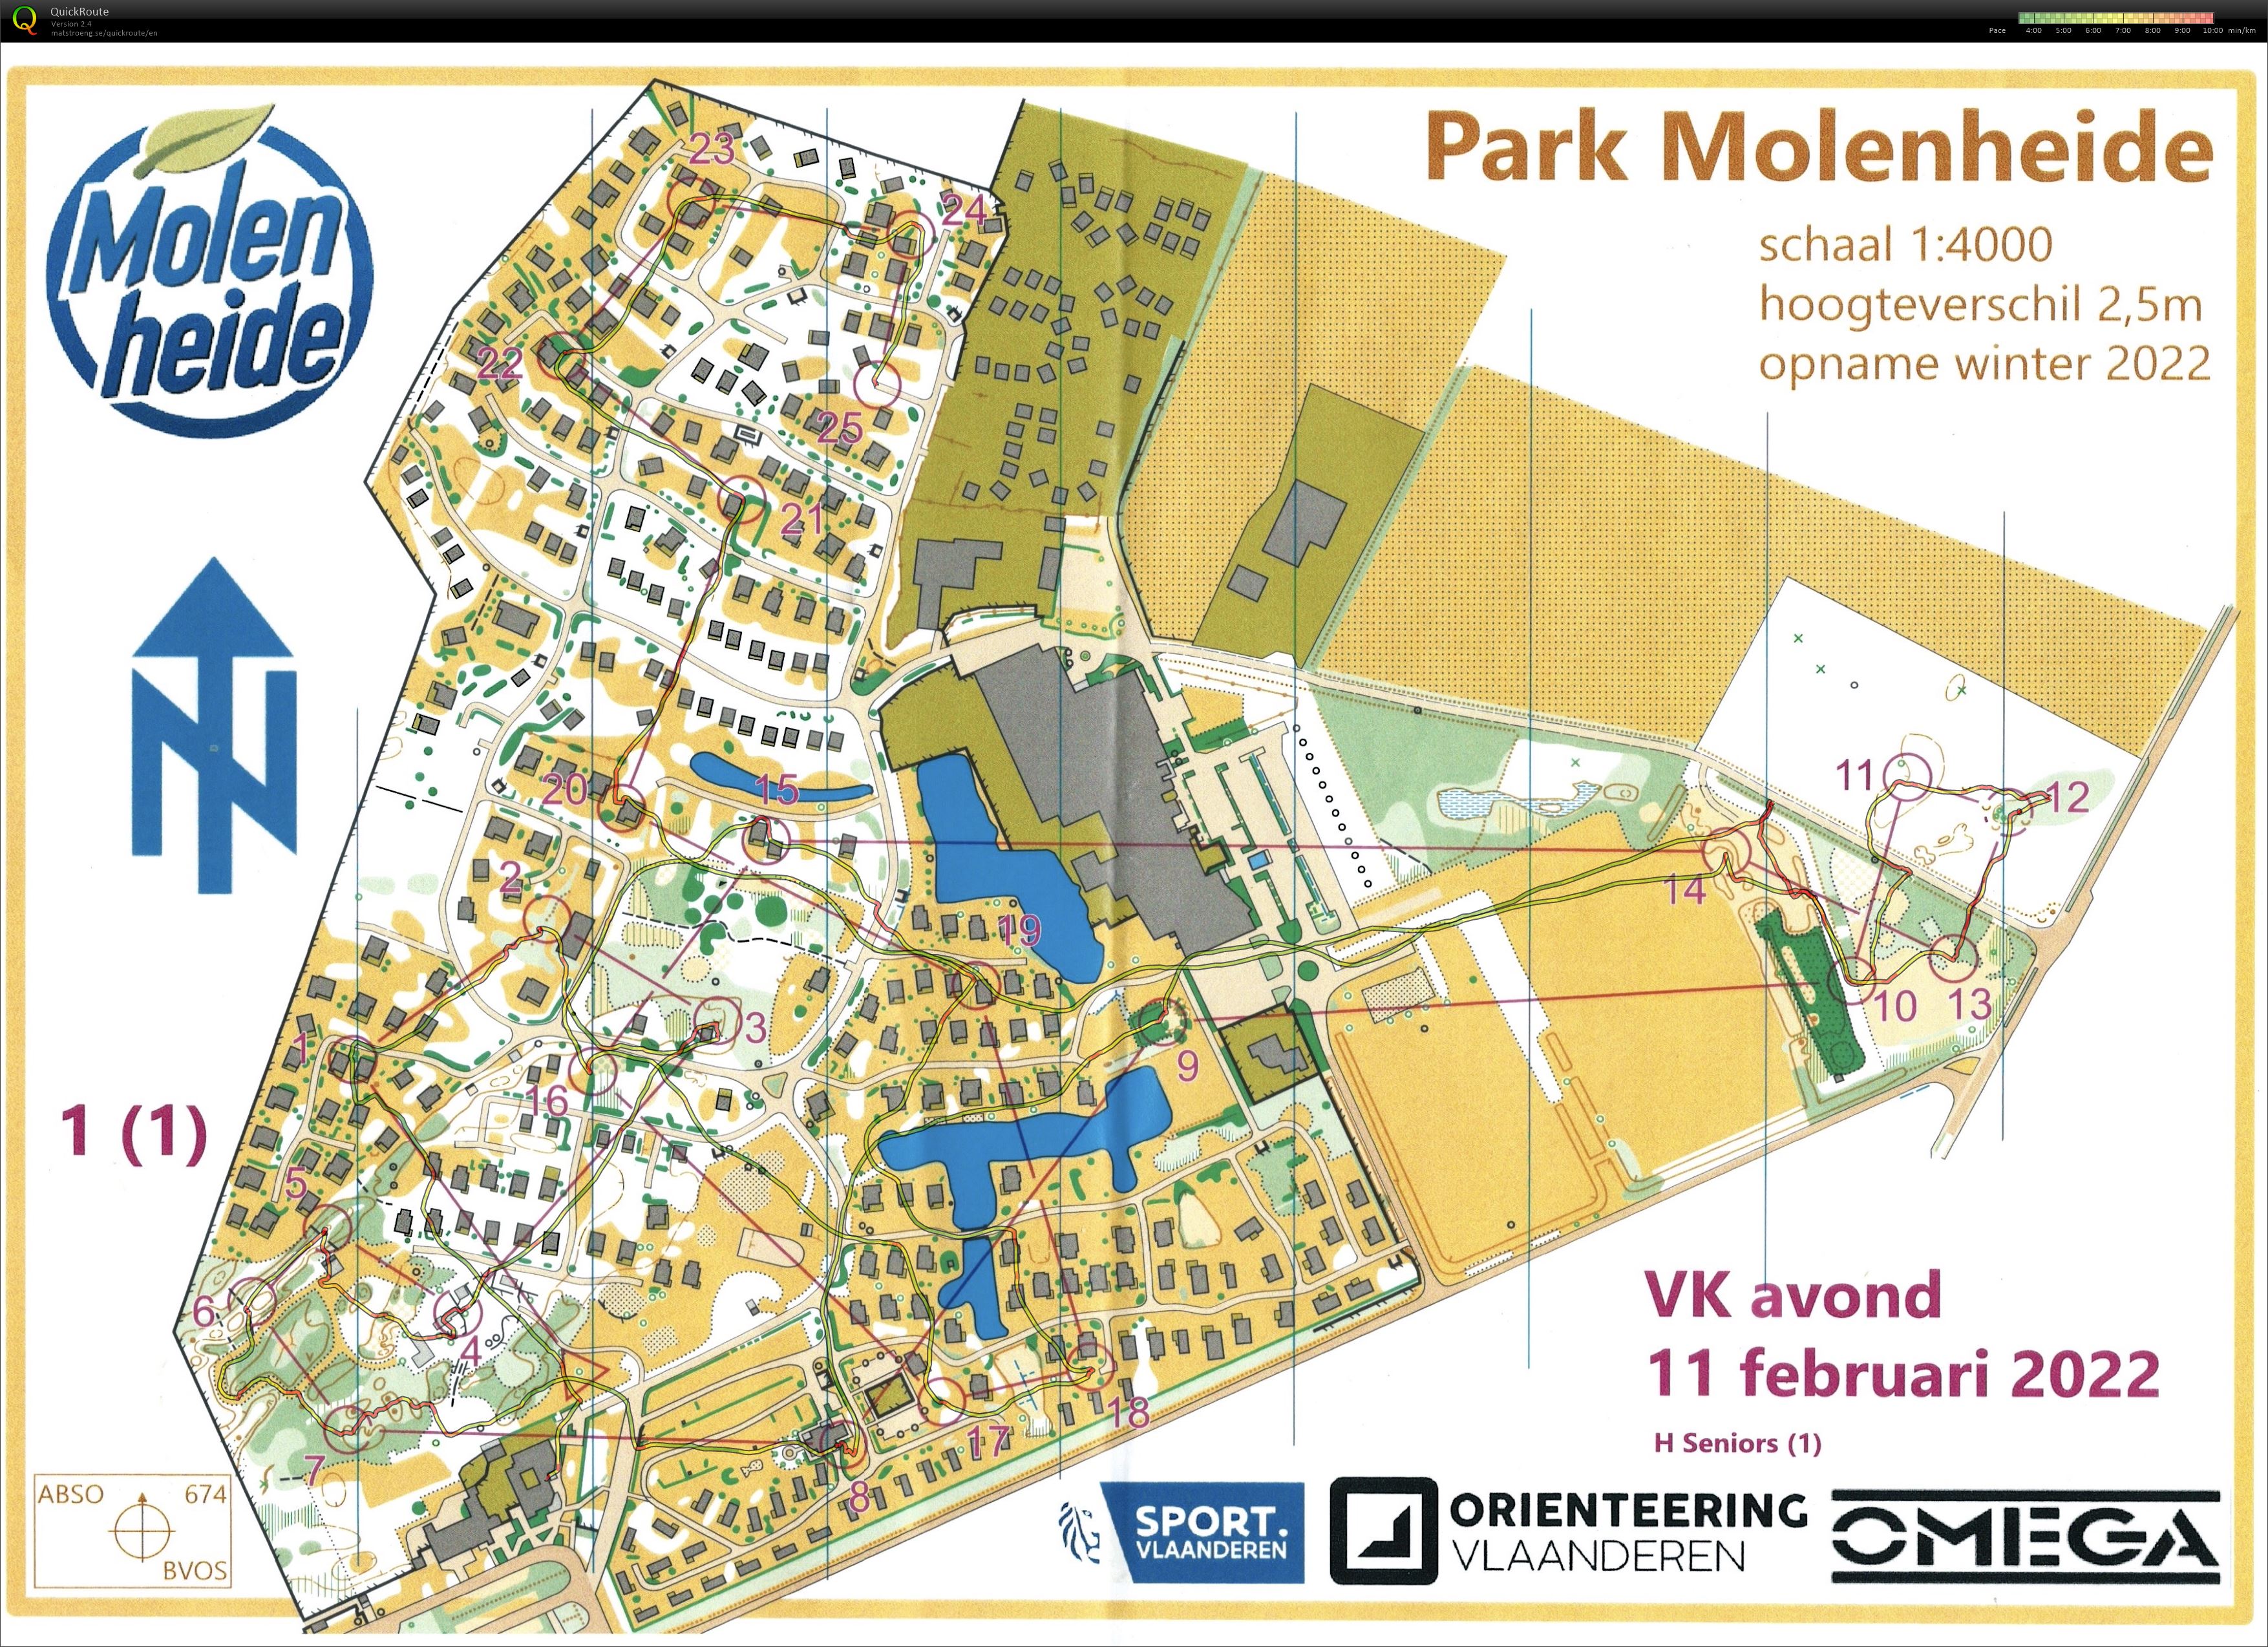 VK Avond - Park Molenheide (11-02-2022)